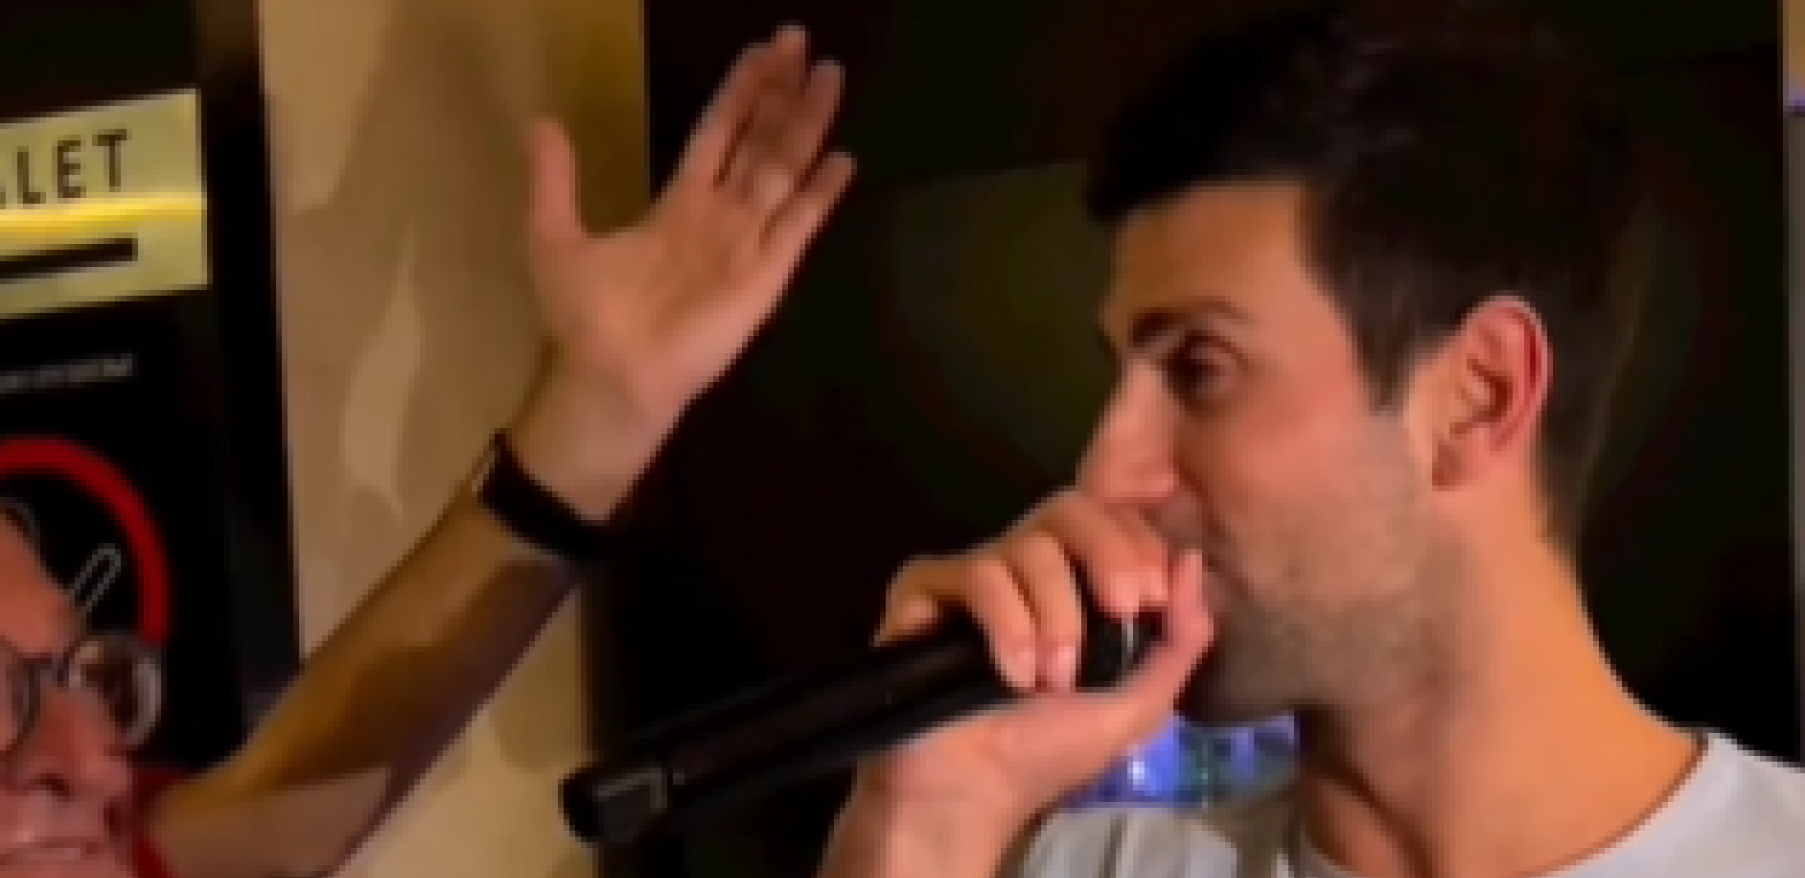 O, GDE SI JELENA, DA MI SRCE SMIRIŠ Novak dohvatio mikrofon, pa zapevao svojoj ljubavi (VIDEO)